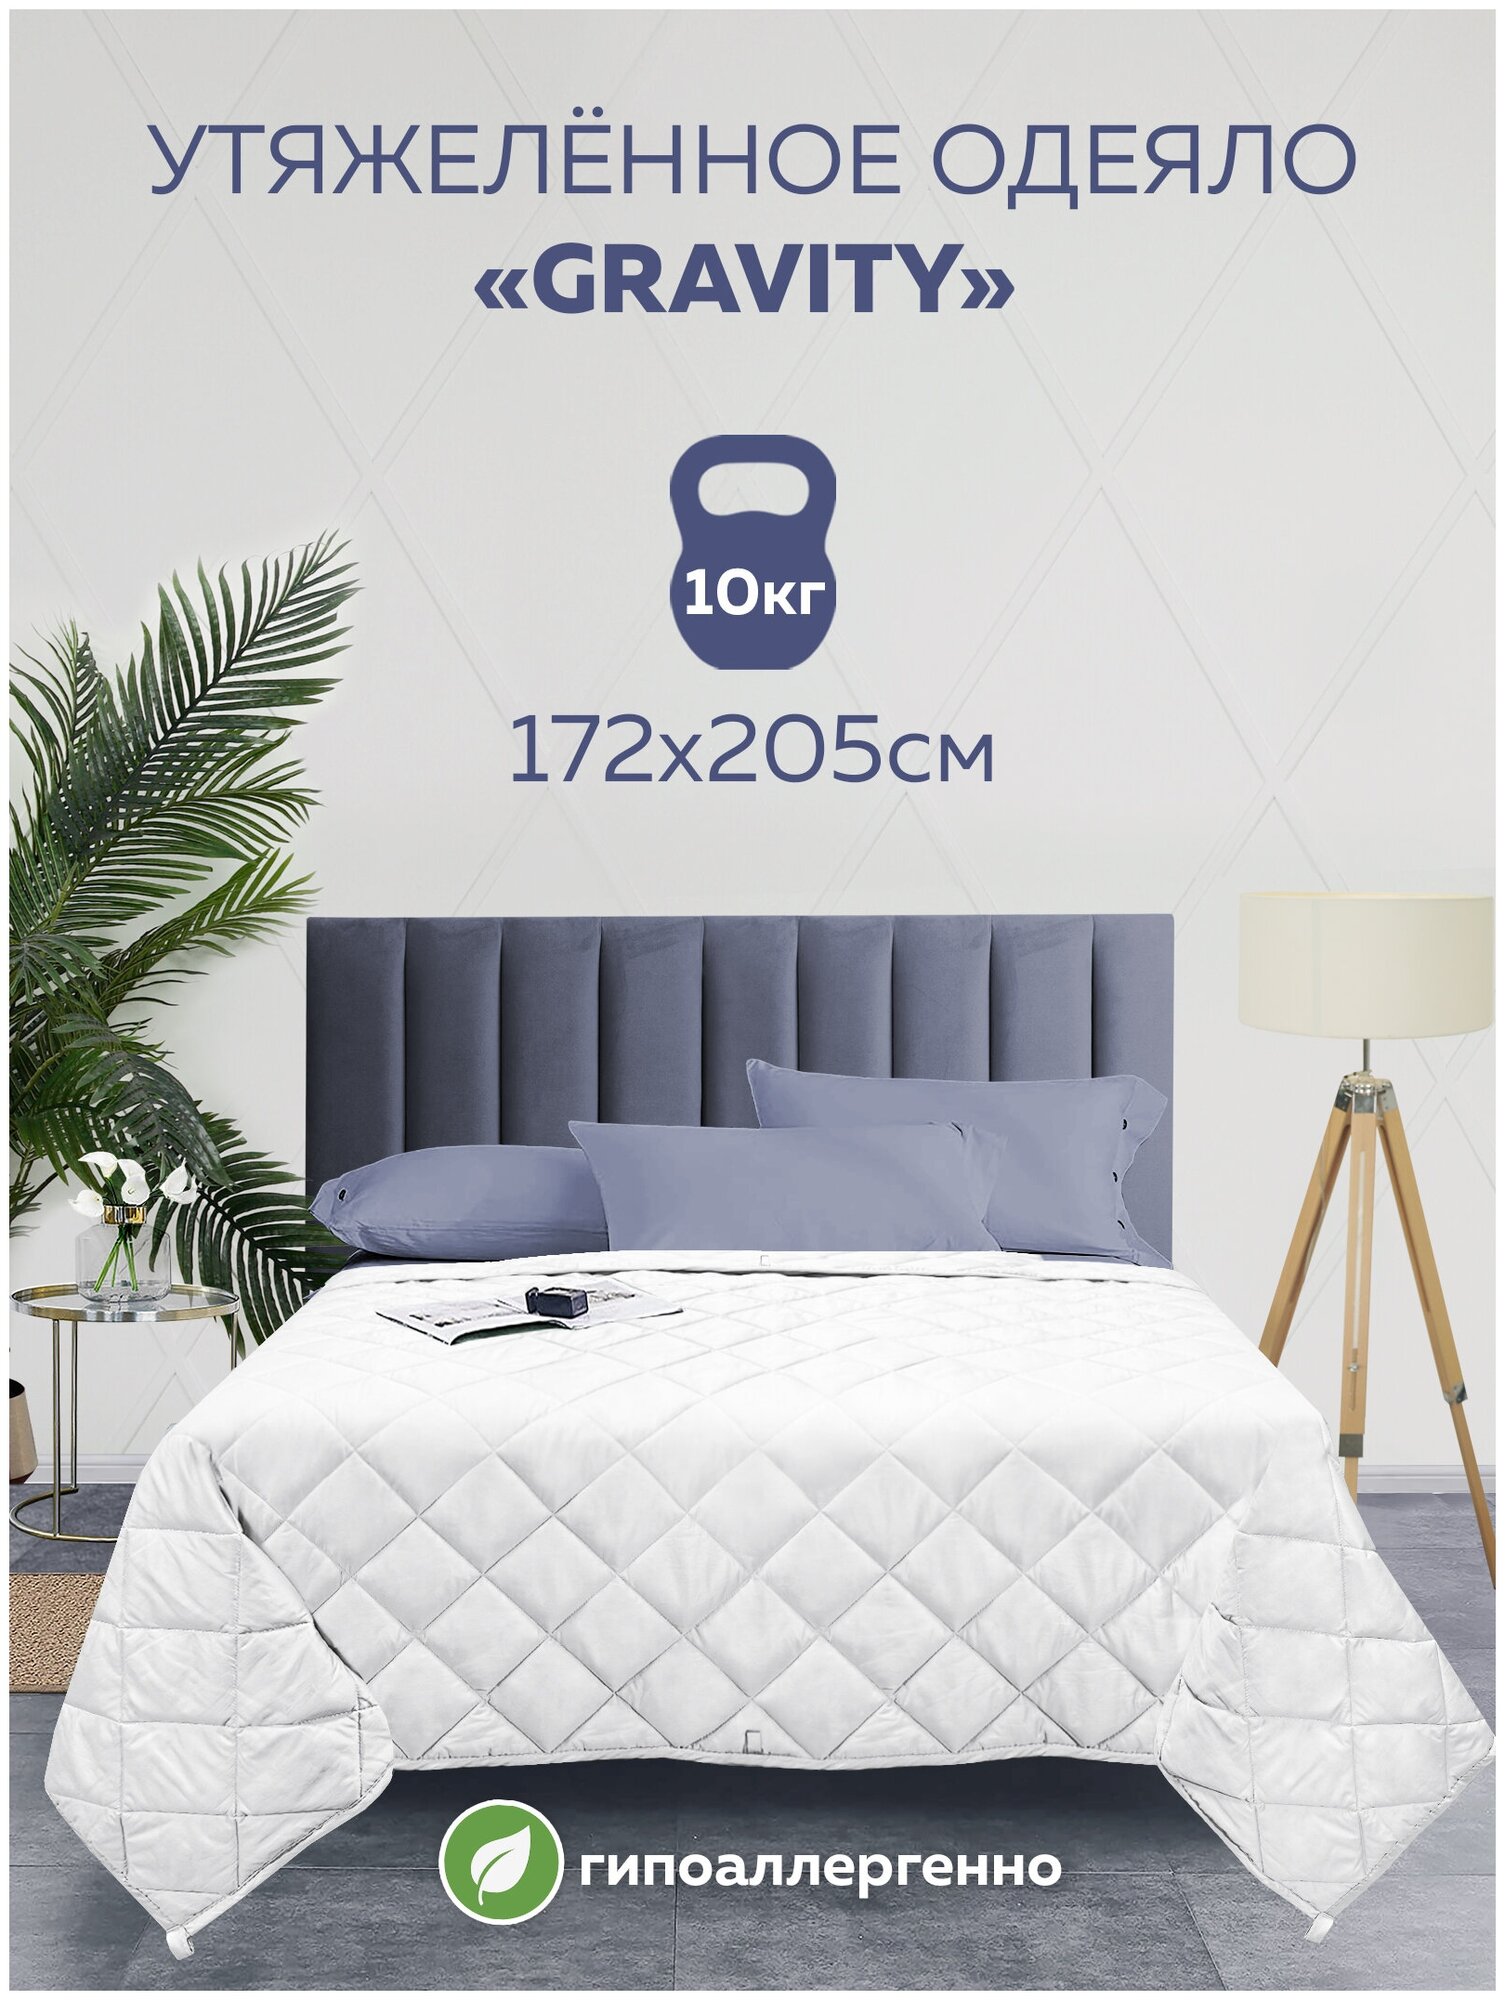 Утяжеленное одеяло Gravity (Гравити) Wellina, 172x205 см. белое 10 кг. / Сенсорное одеяло Gravity 172 x 205 см. 10 кг. (цвет белый) / Тяжелое одеяло - фотография № 15